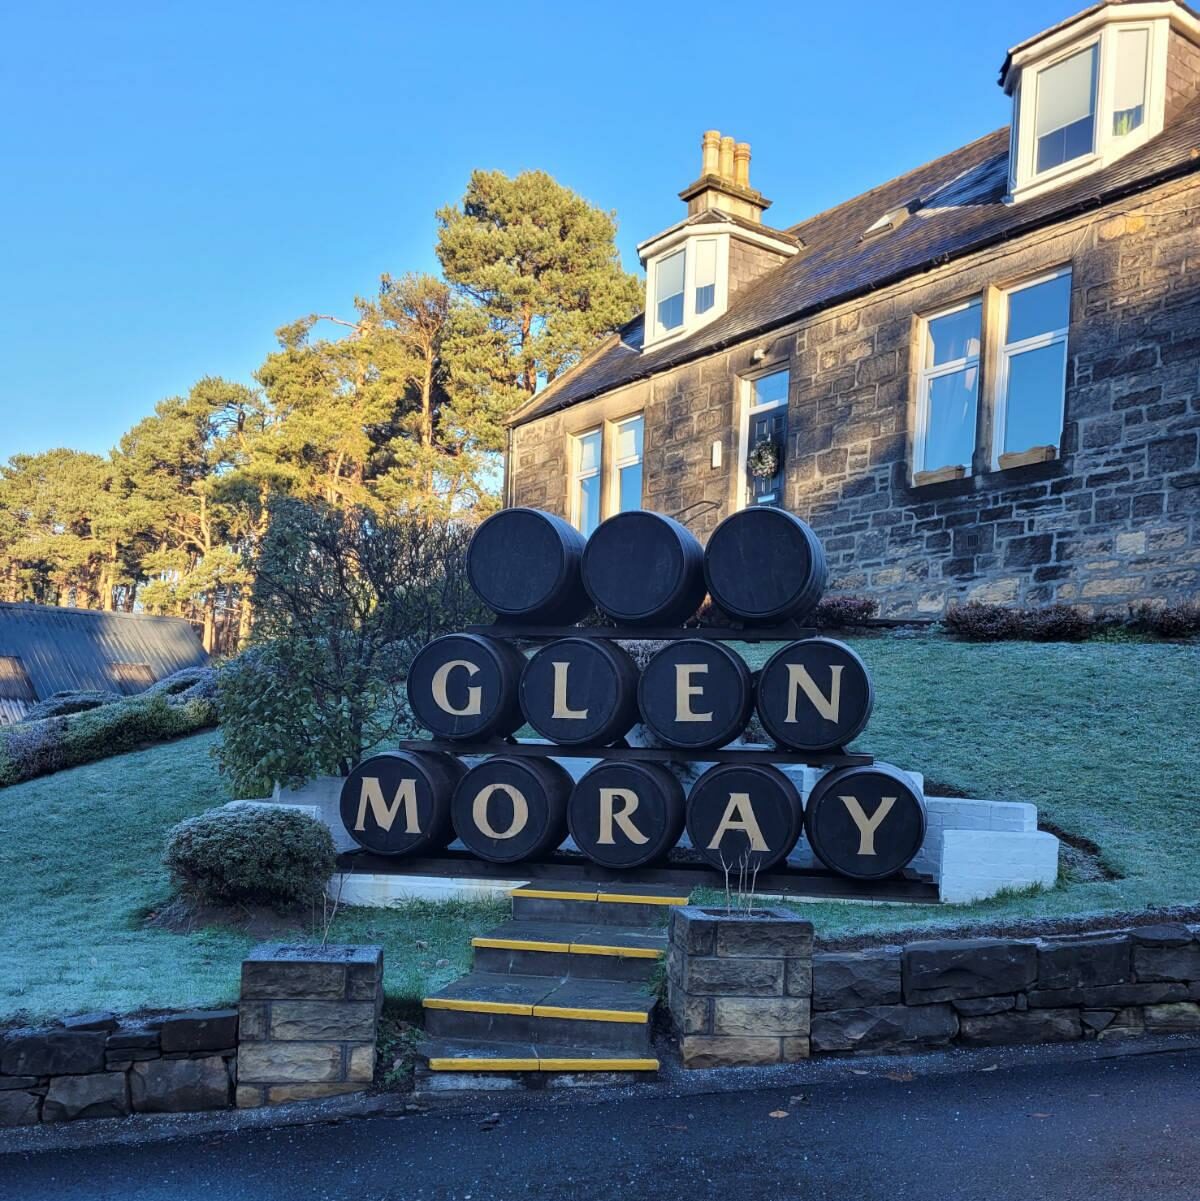 glen moray distillery casks at entrance